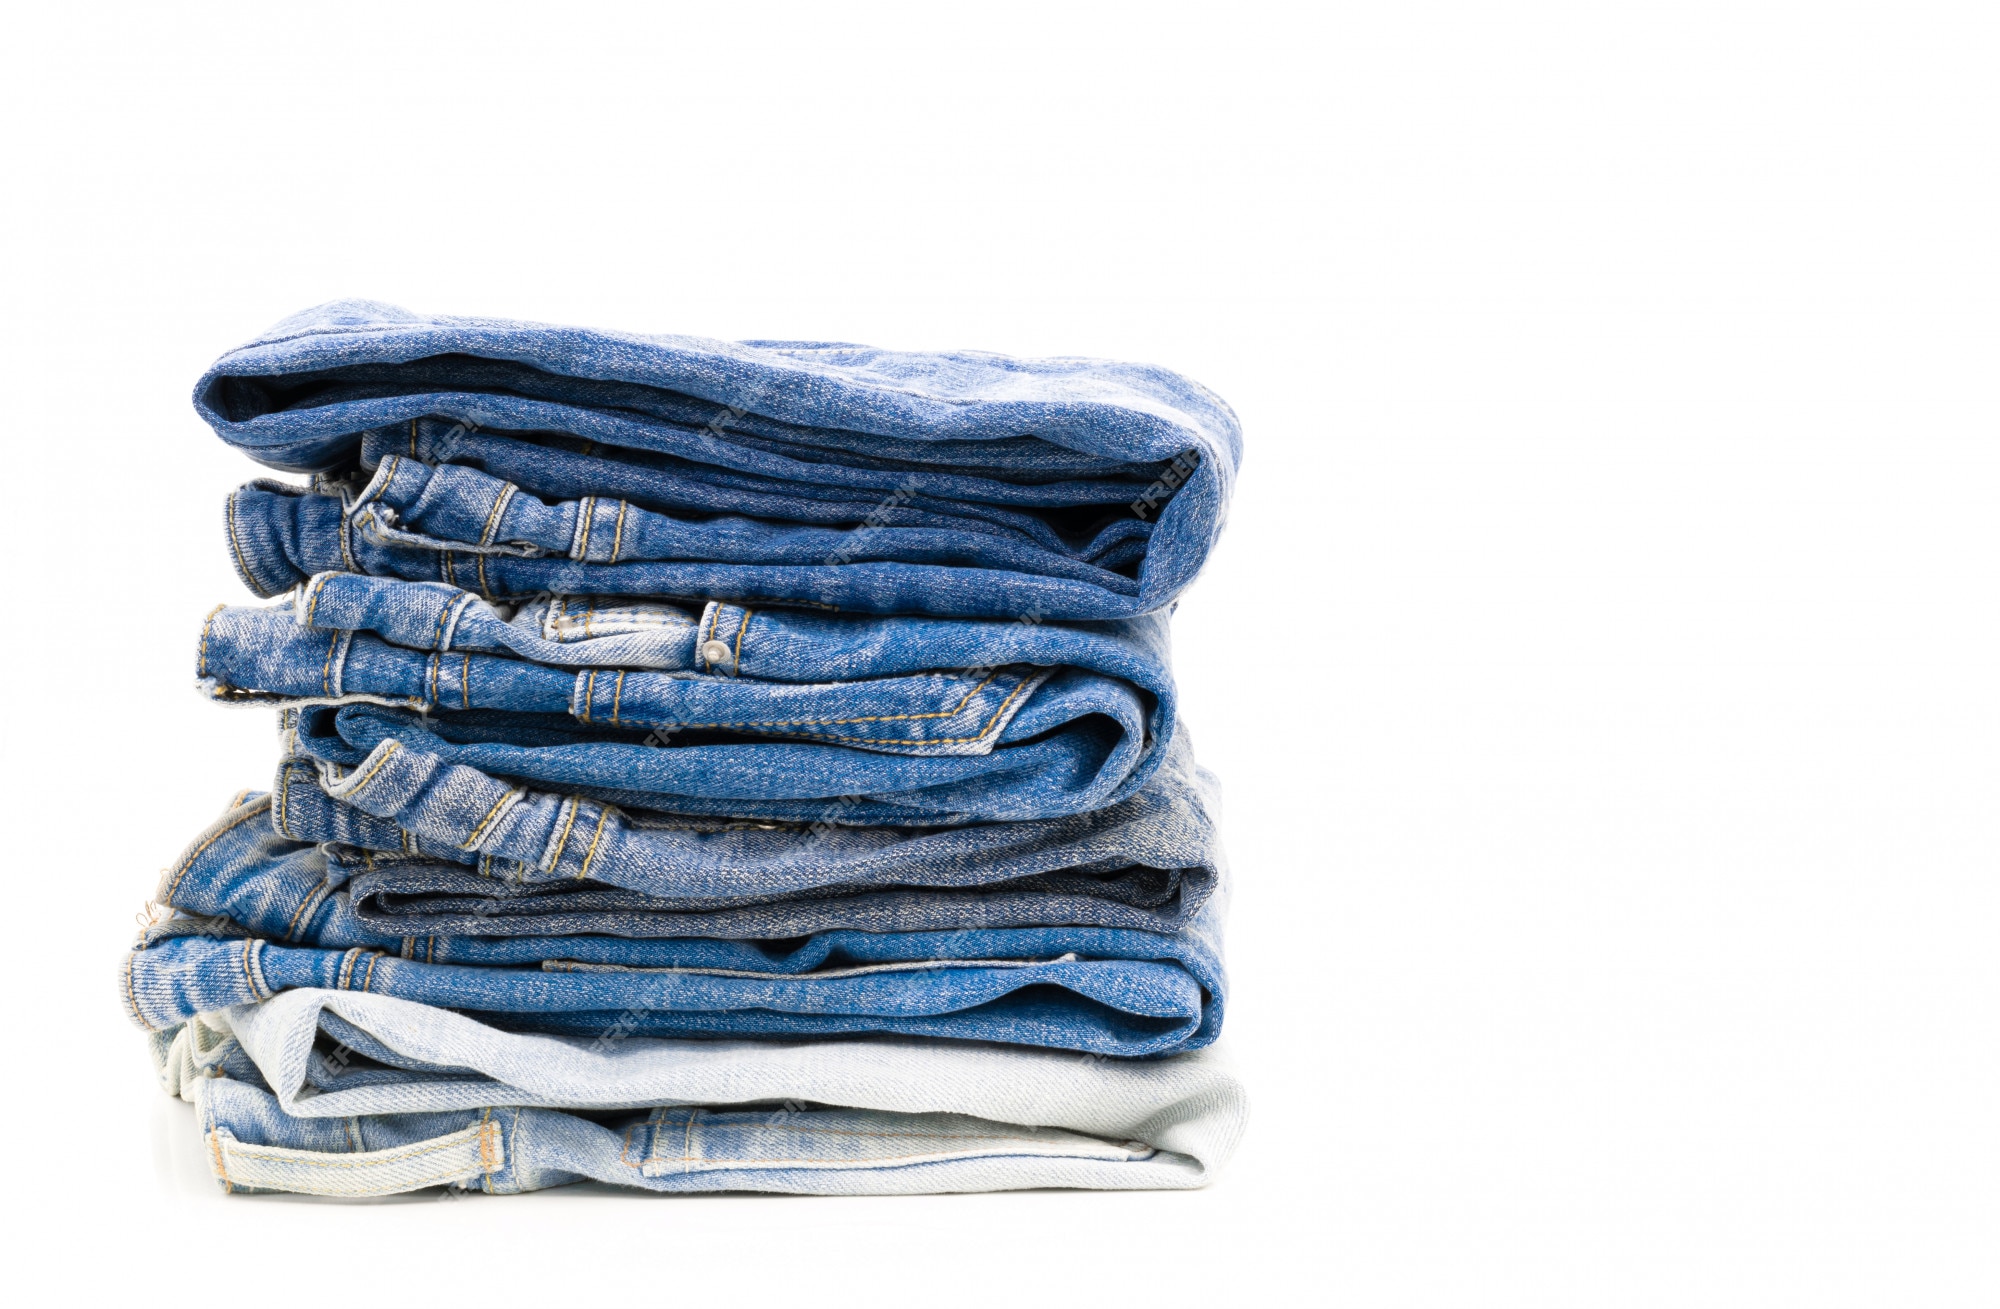 Premium Photo | Jeans fold on white